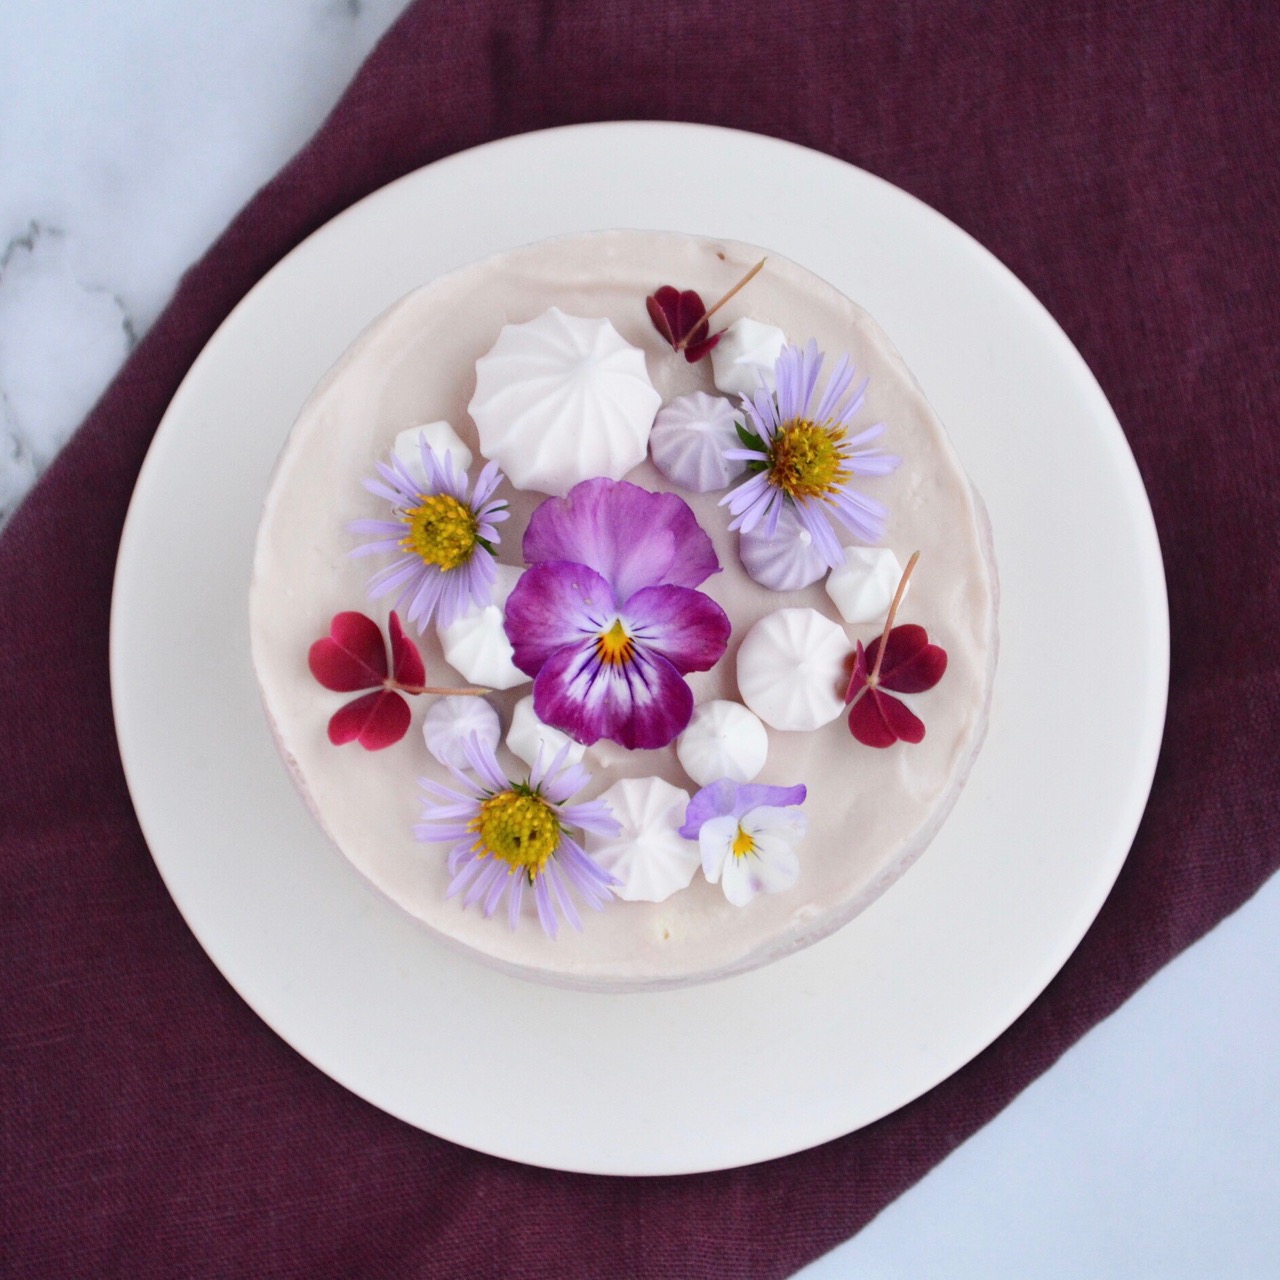 Kage med spiselige blomster